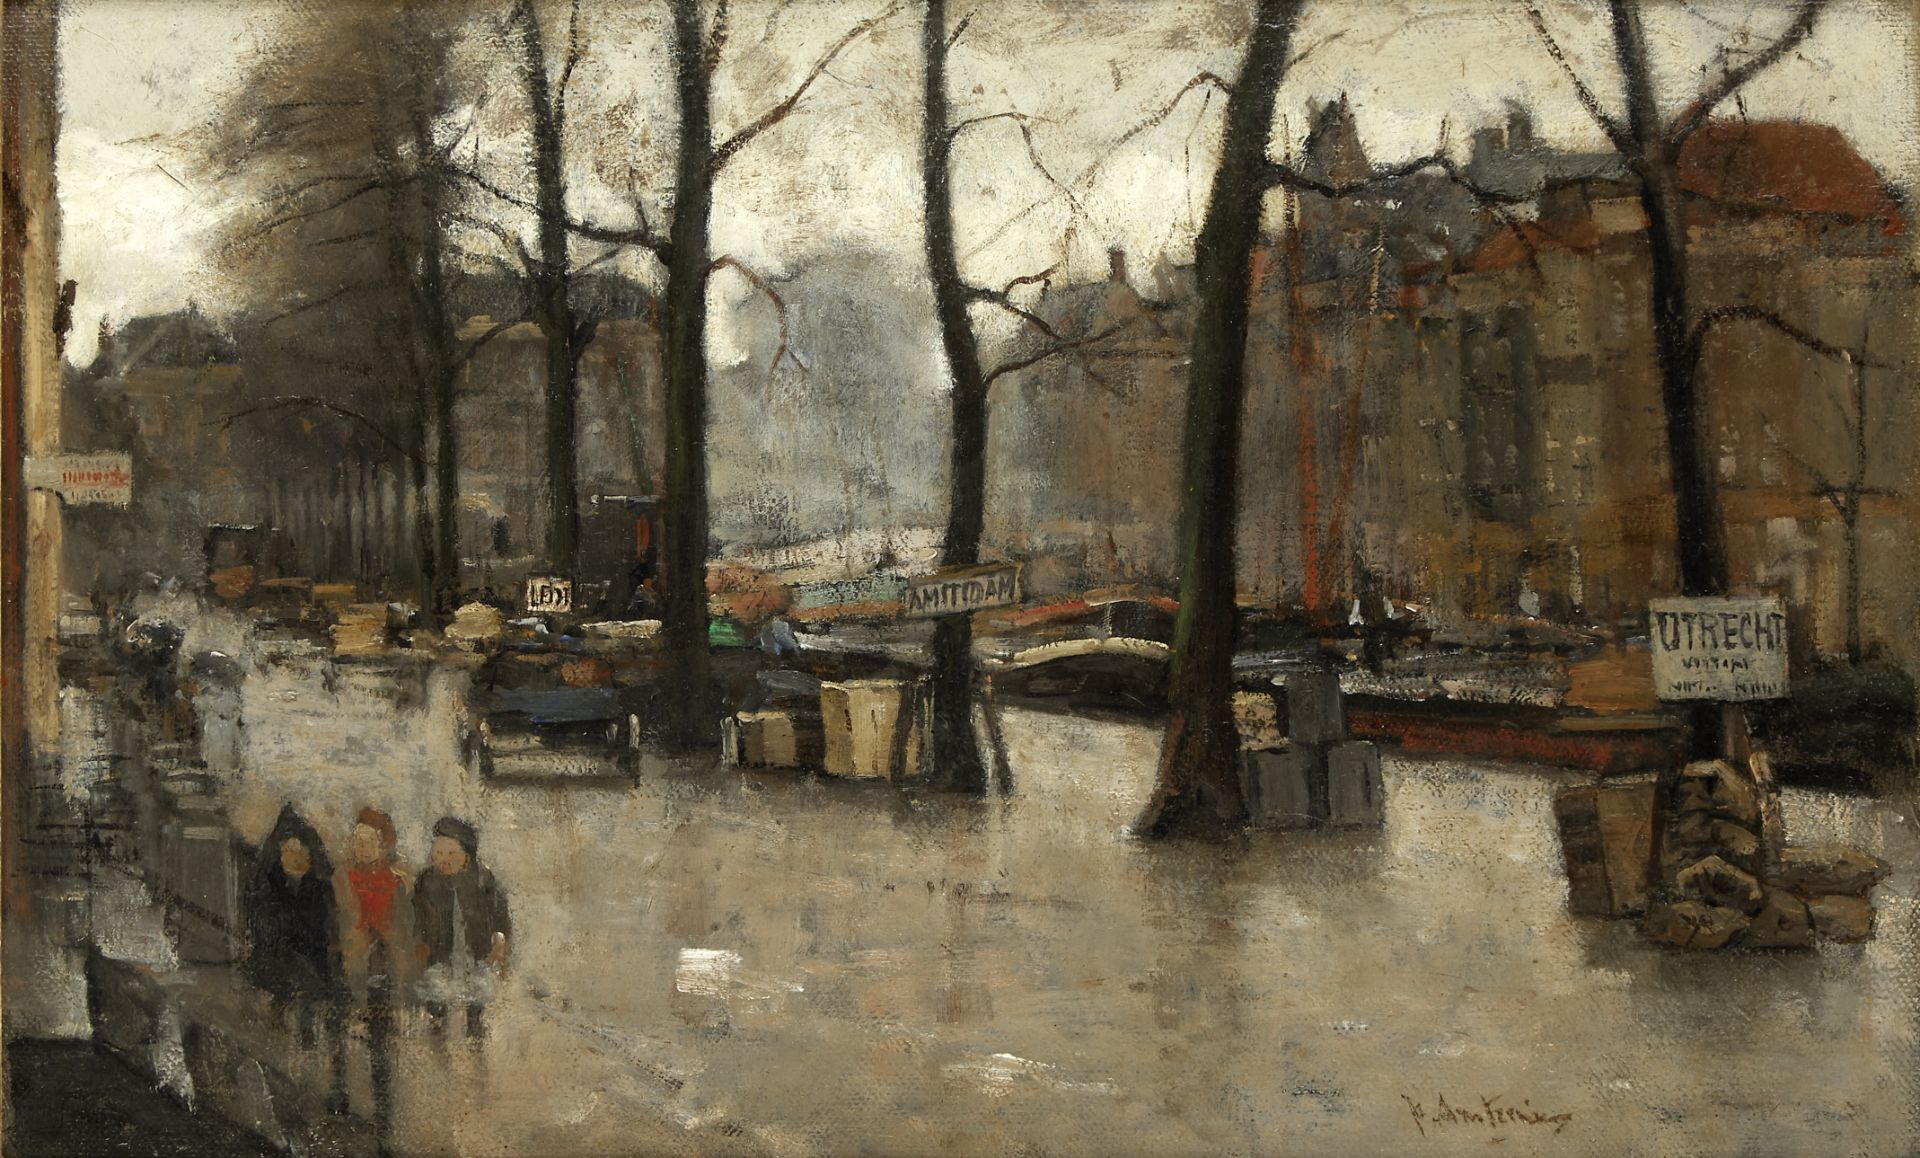 Floris Arntzenius (Dutch, 1864-1925) De Veerkade te 's-Gravenhage' (The Veerkade, The Hague)